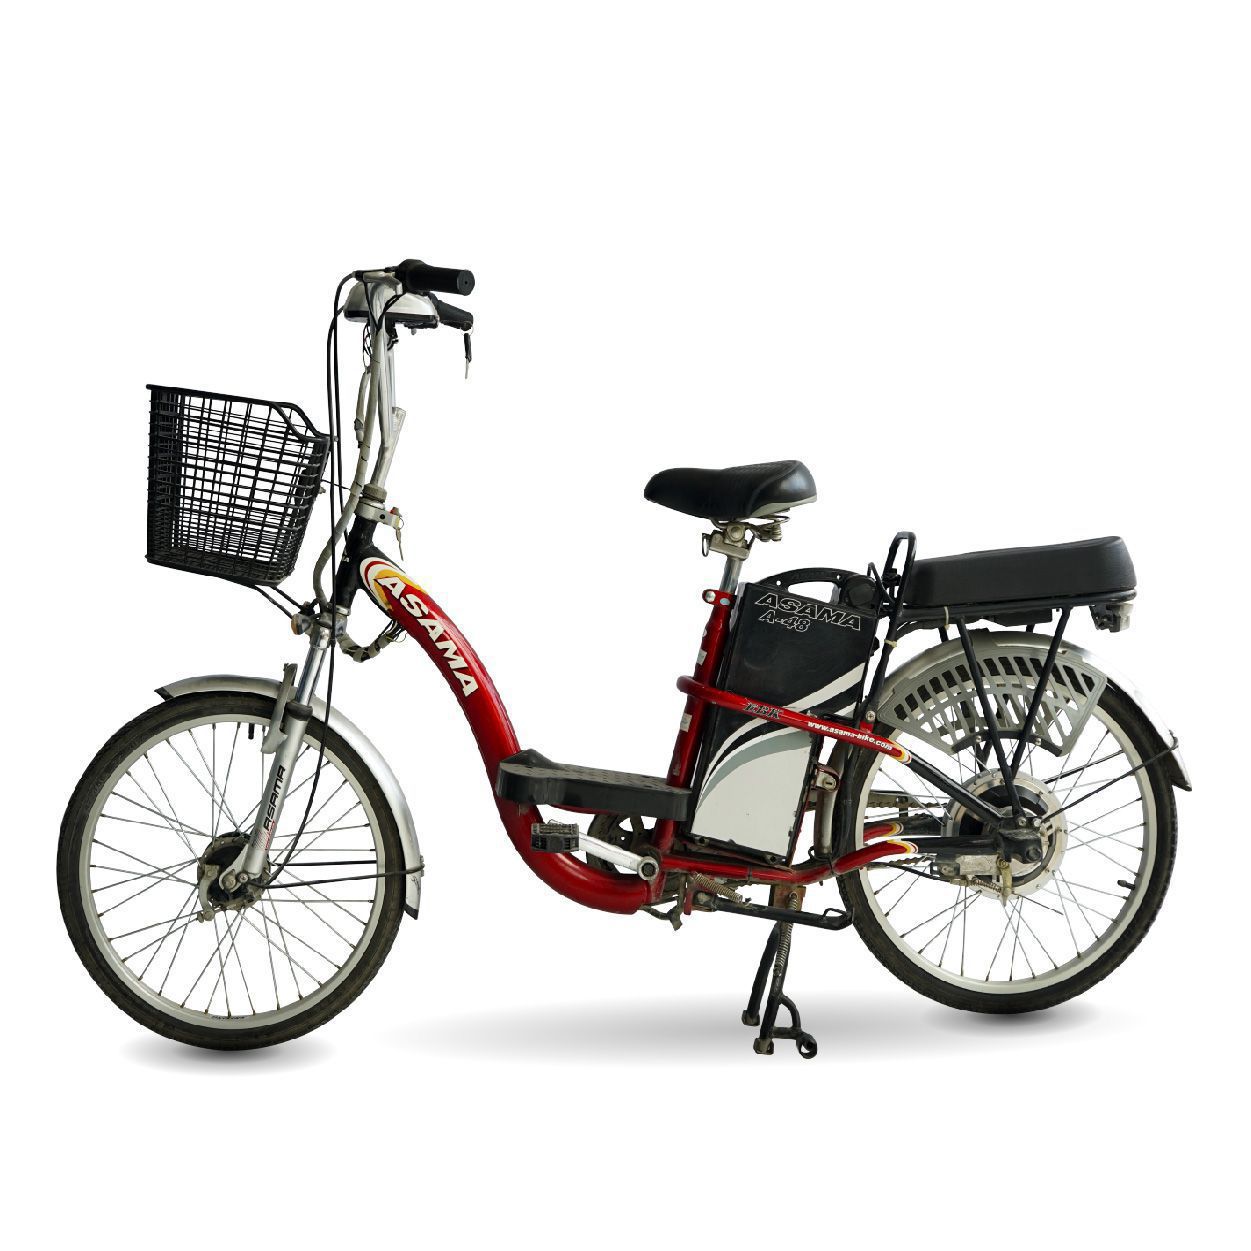 Xe dap dien Asama A 48 do 02 - Tổng hợp những mẫu xe đạp điện giá rẻ nhất 2020